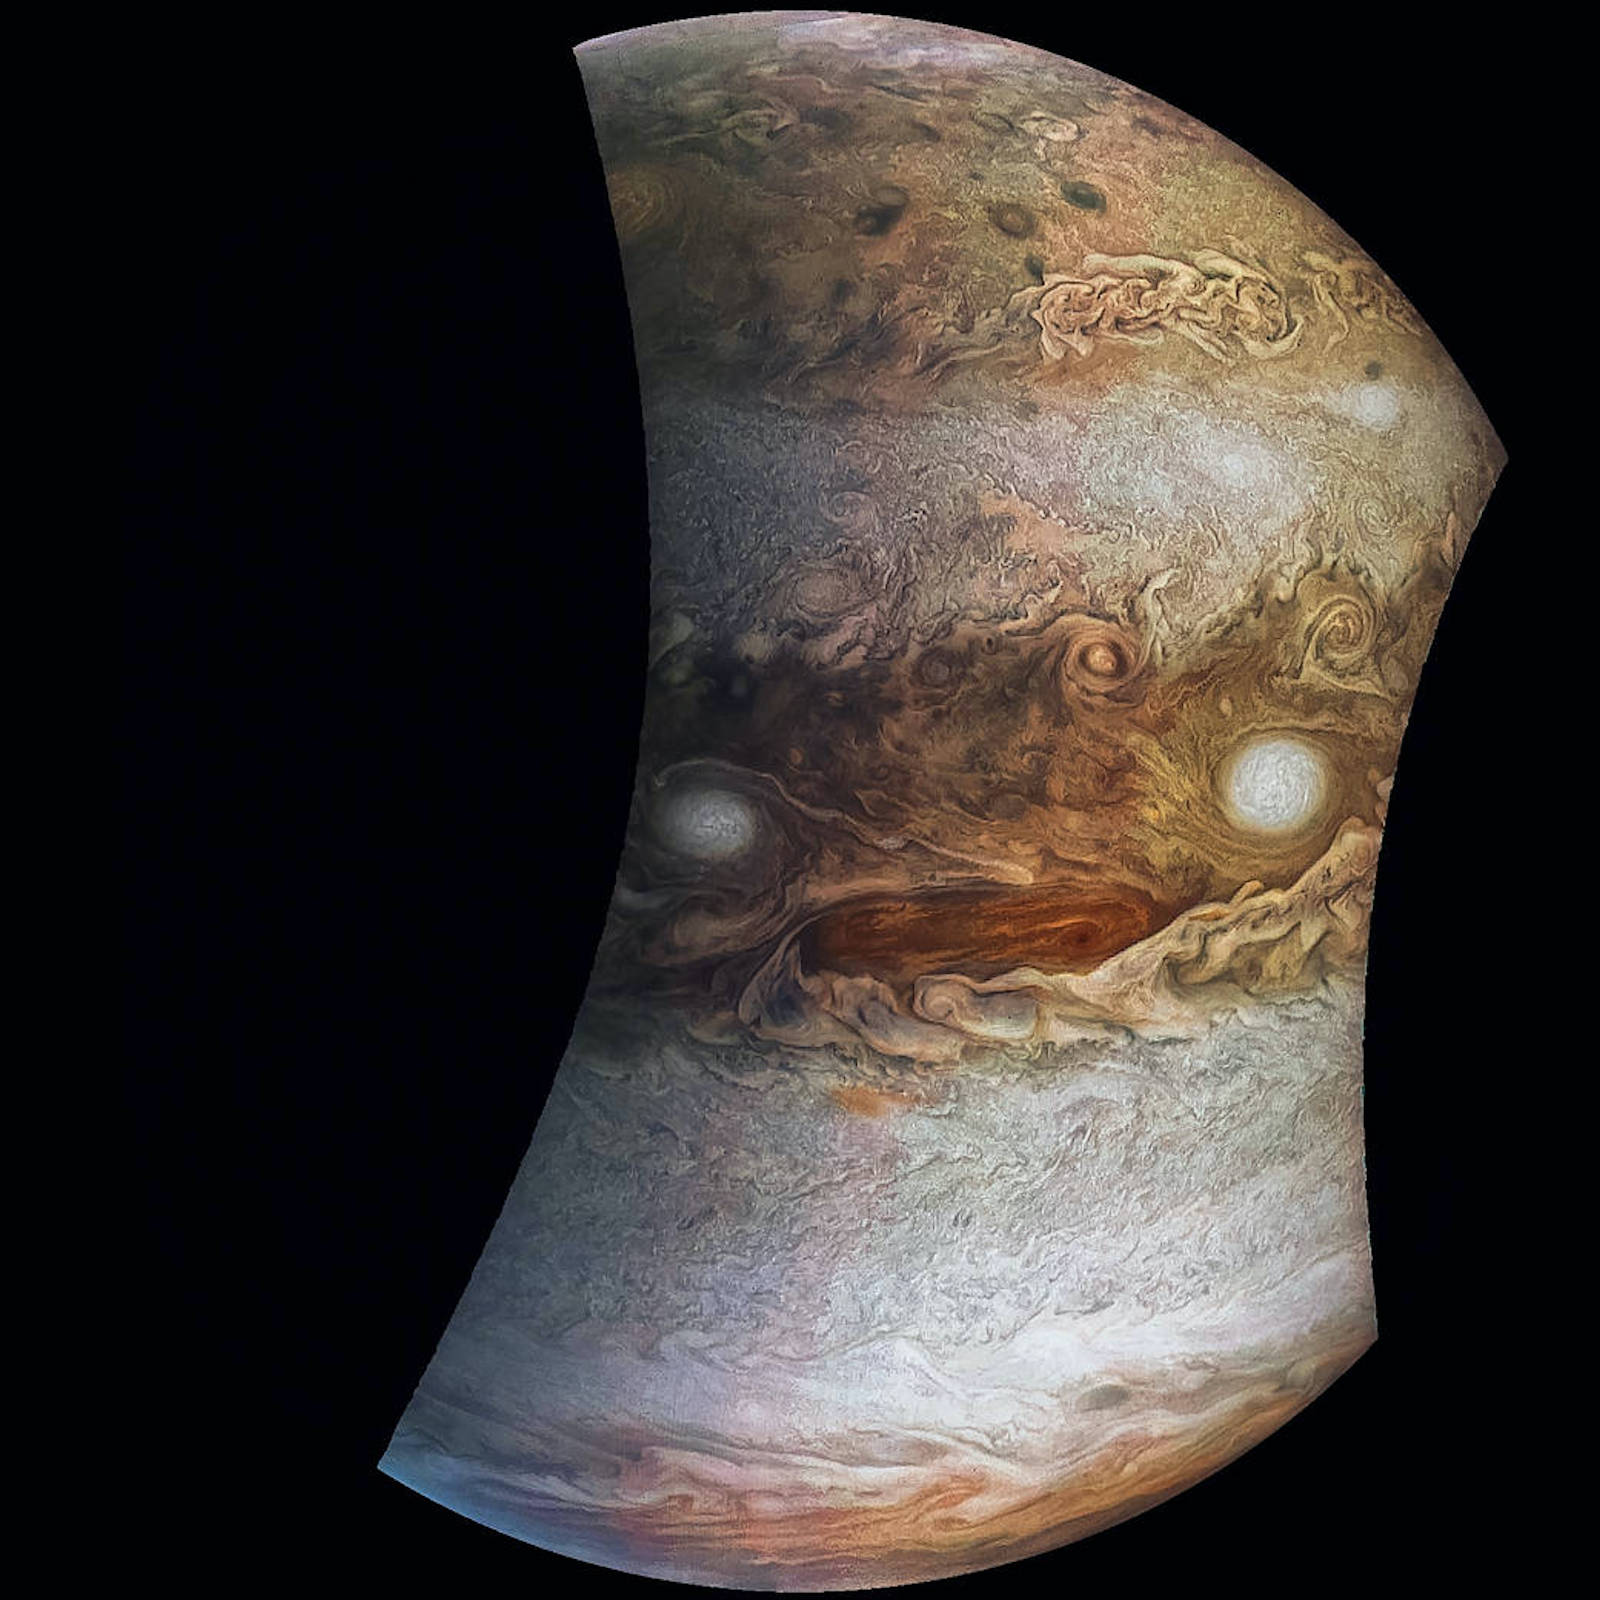 Jupiter looking angry, imaged by NASA's JunoCam on May 19, 2017.